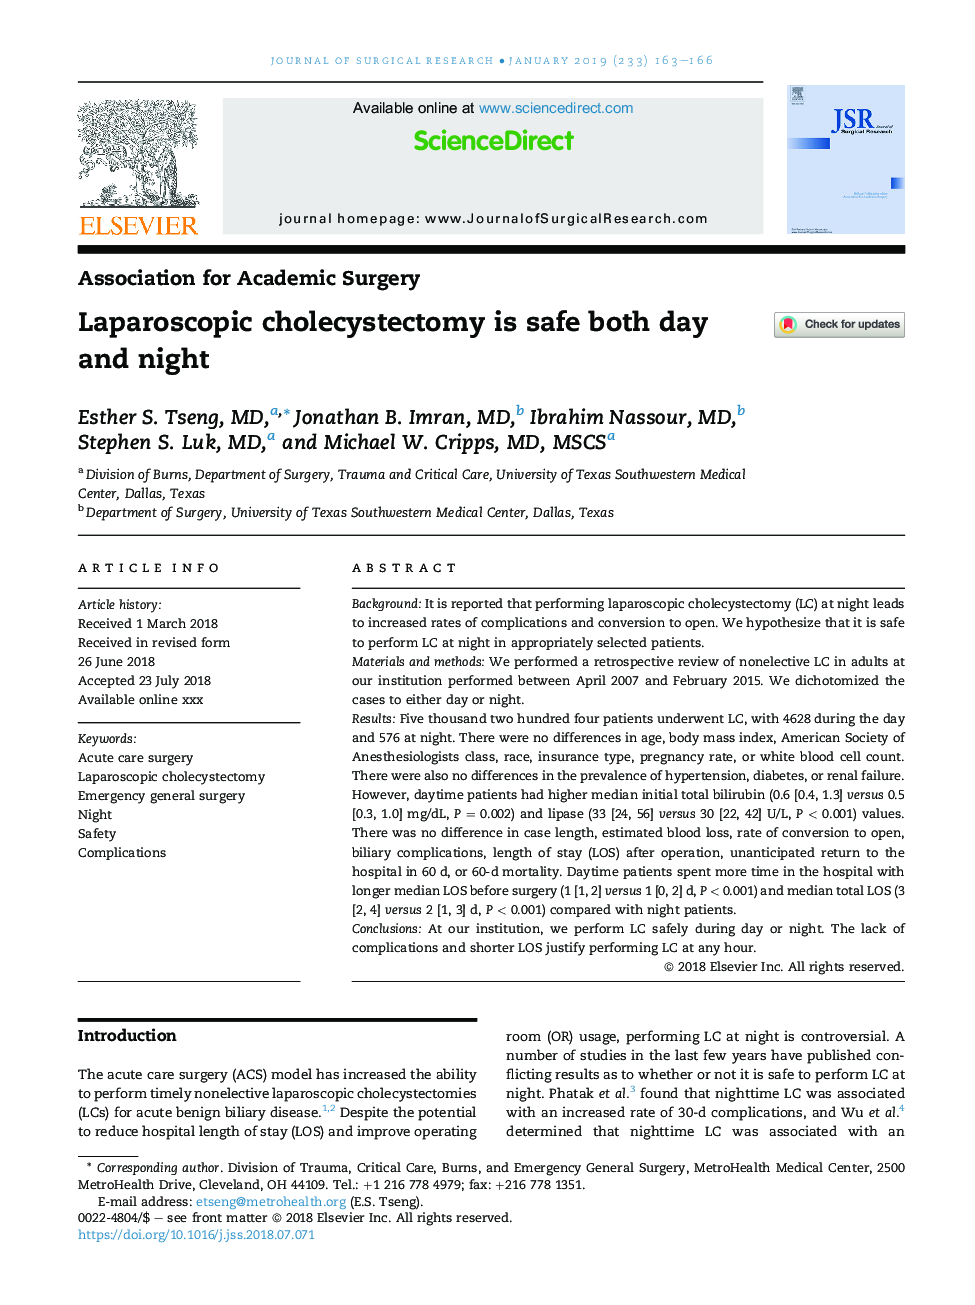 کولسیستکتومی لاپاروسکوپی روز و شب ایمن است